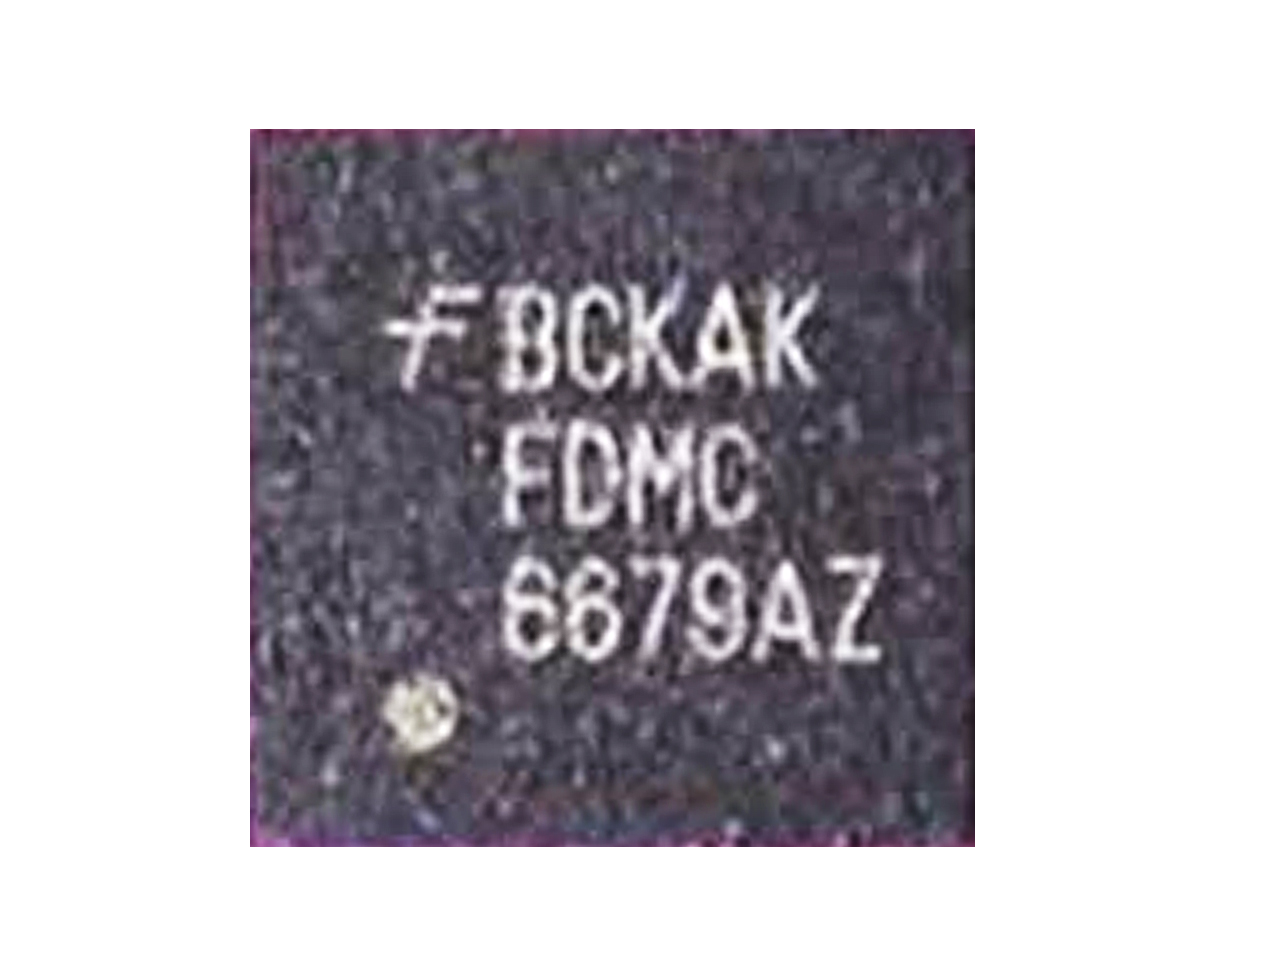 FDMC6679AZ